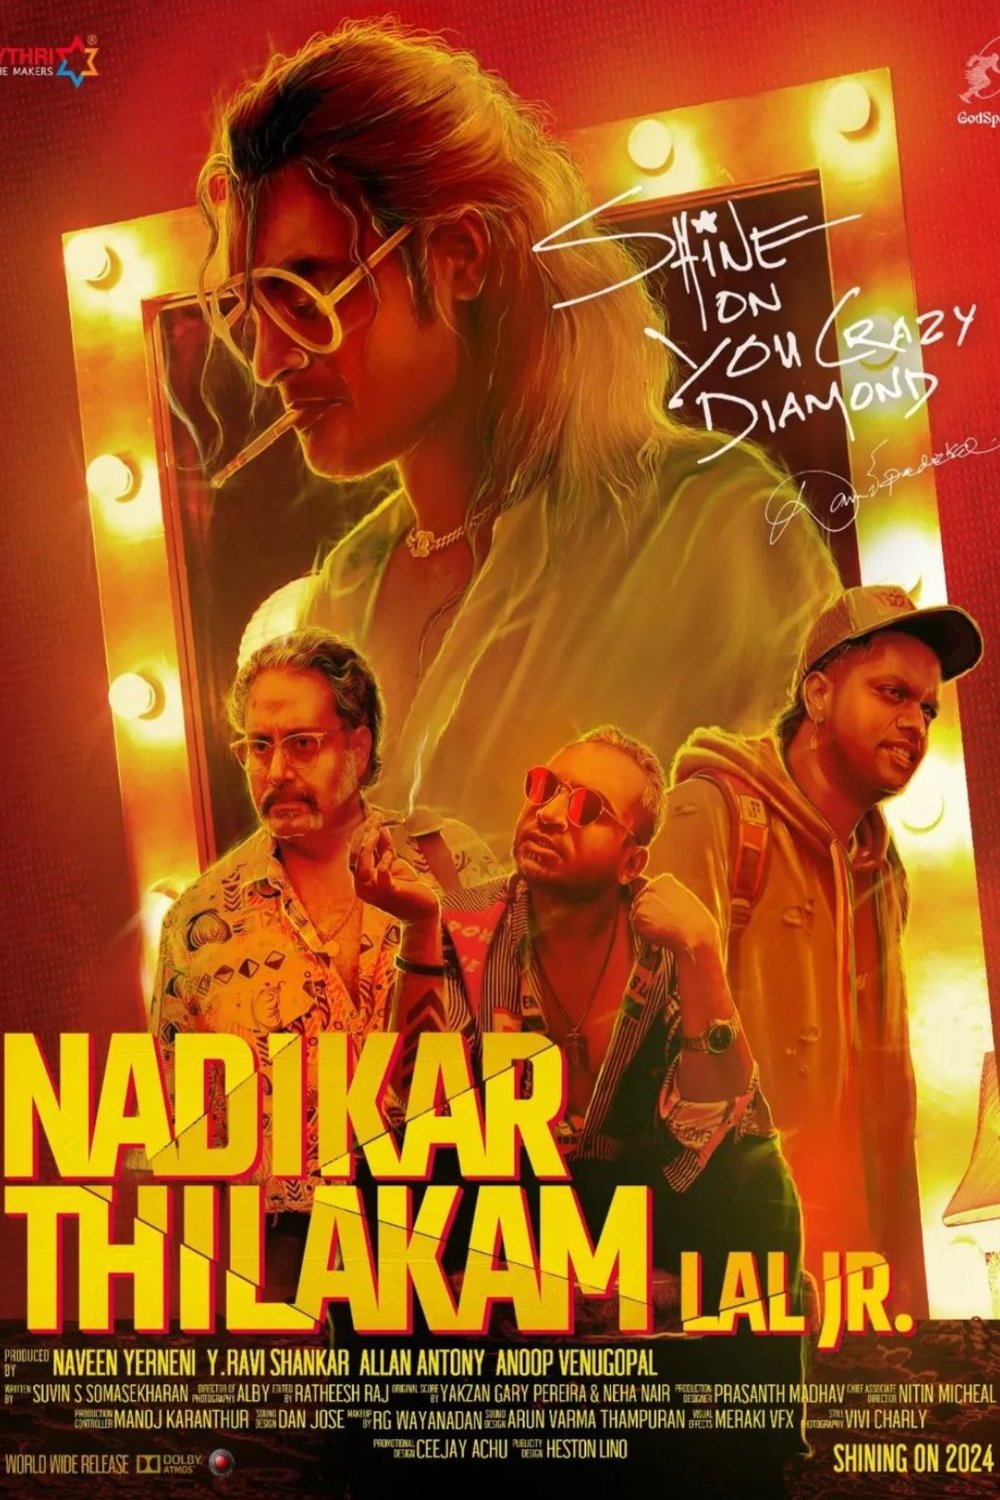 Malayalam poster of the movie Nadikar Thilakam